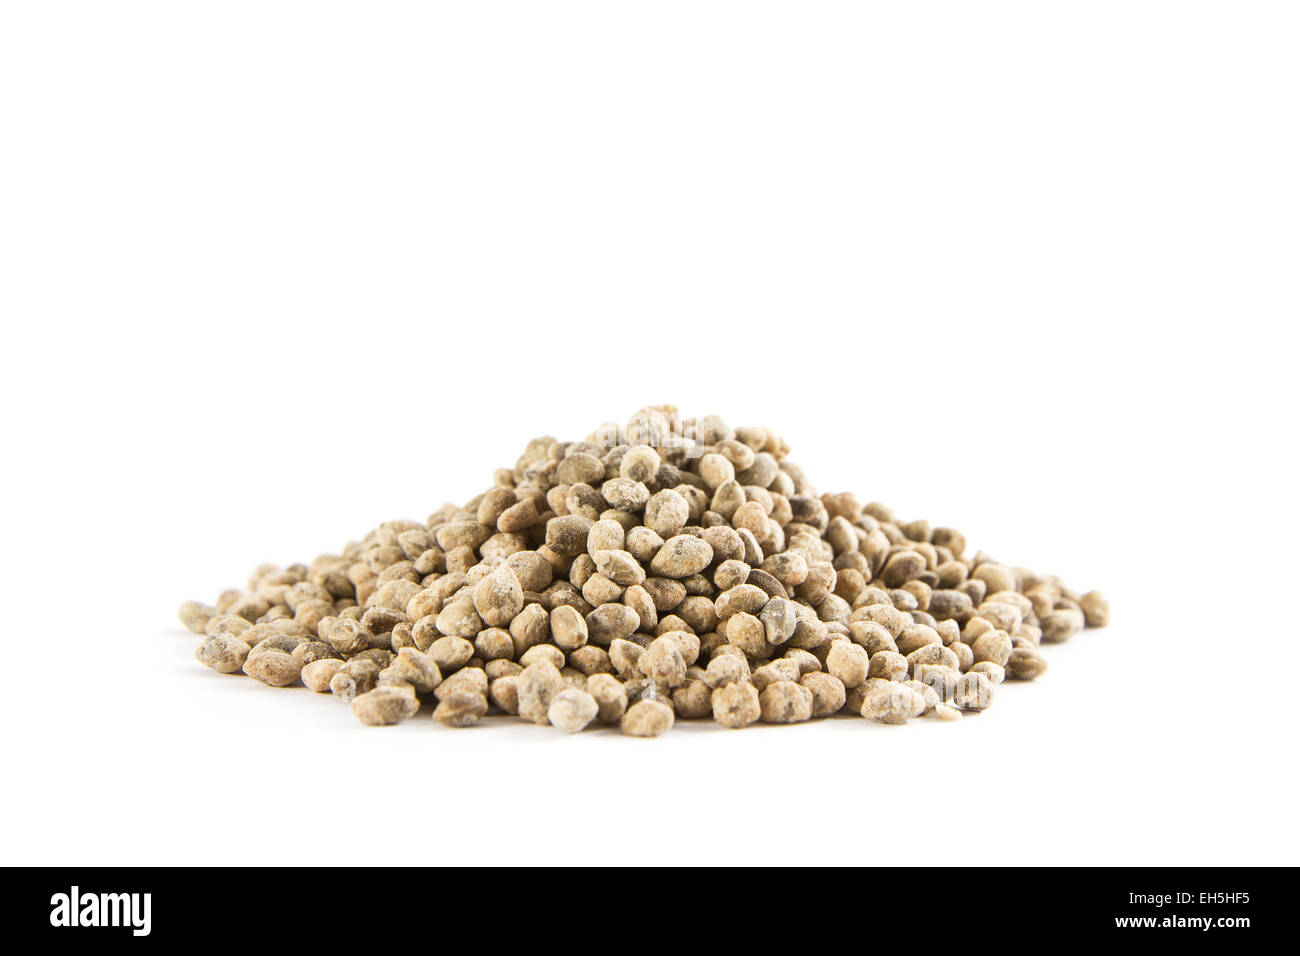 Hanf Samen Snacks auf weißem Hintergrund. Hanfsamen mit Muscheln werden oft wegen ihres hohen Gehalts an Nutrie Super Food genannt. Stockfoto